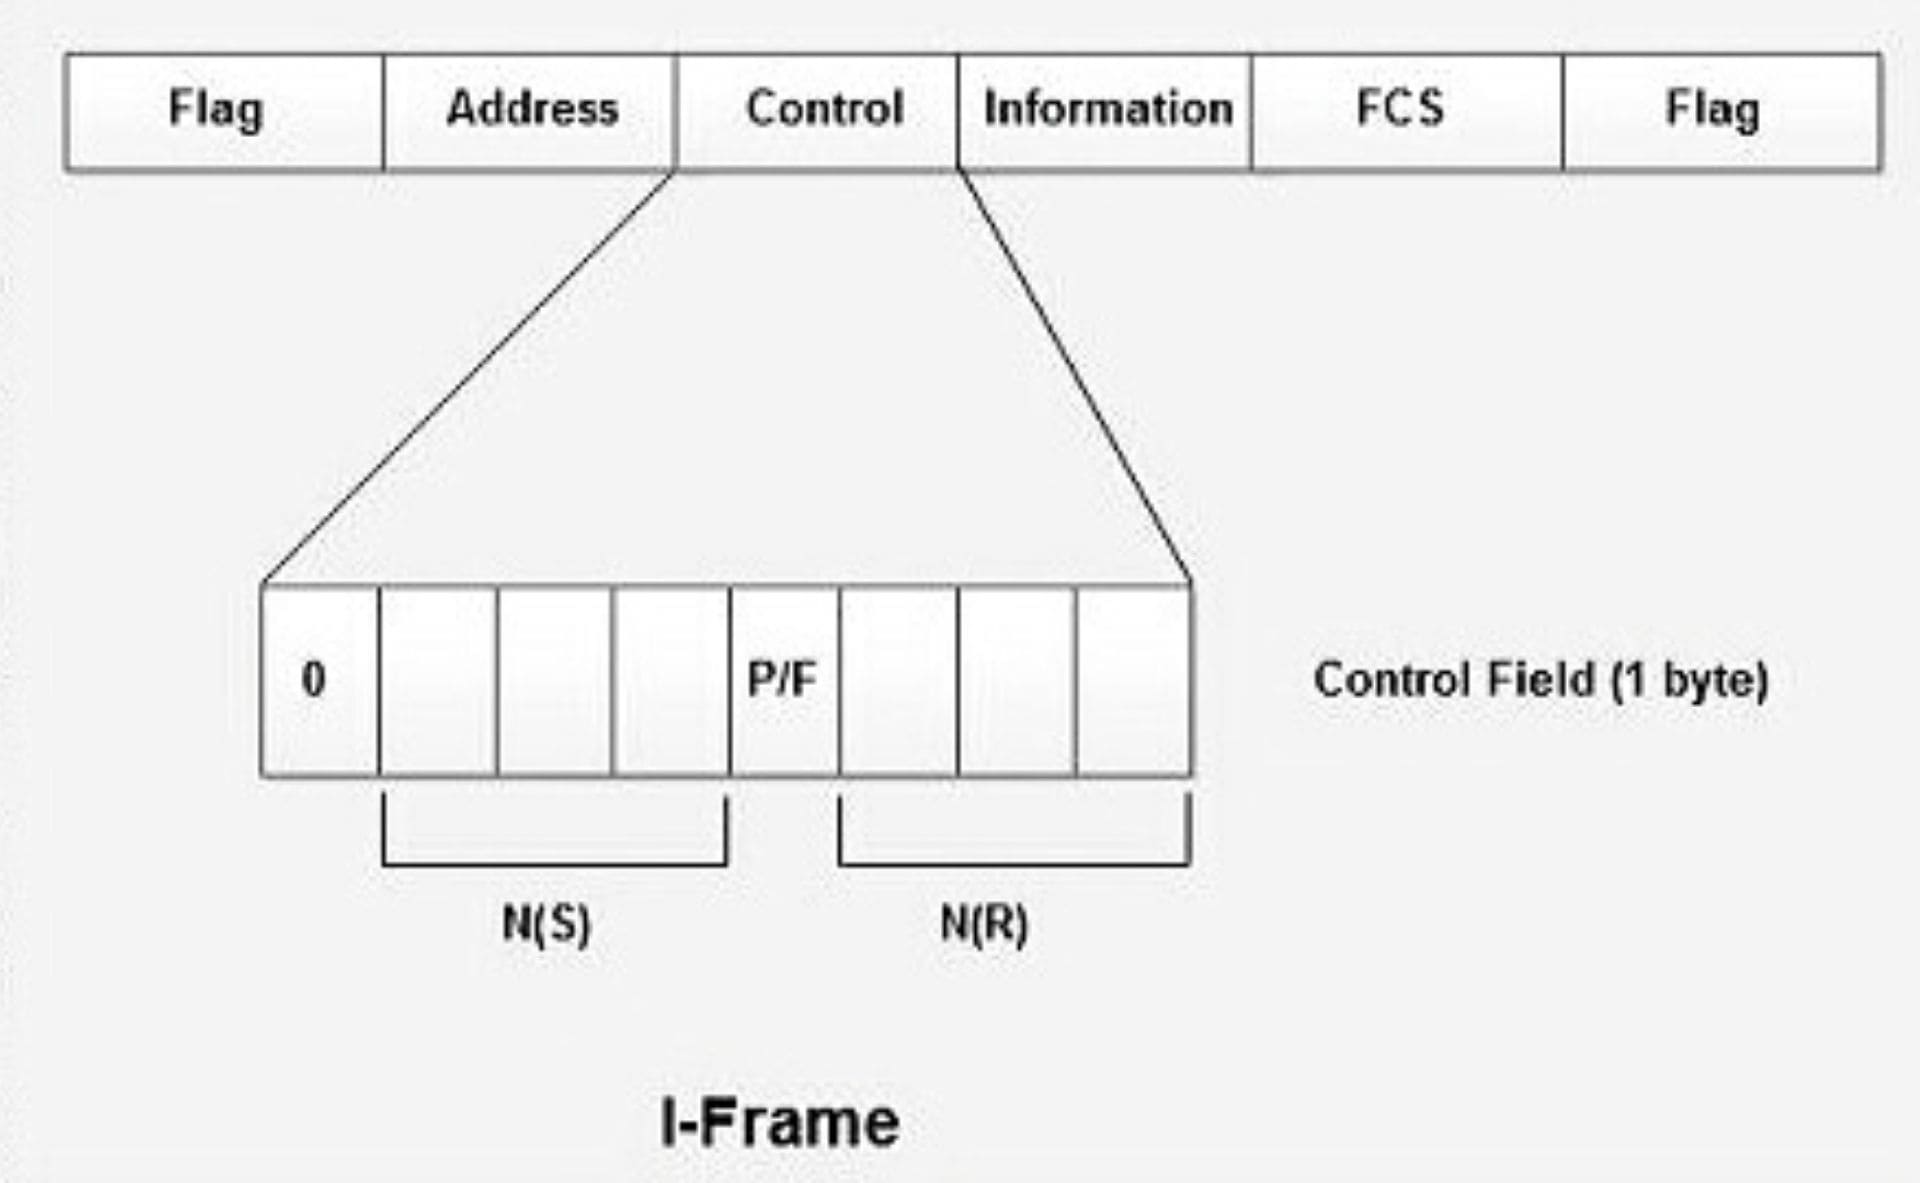 I frame hdlc protocol